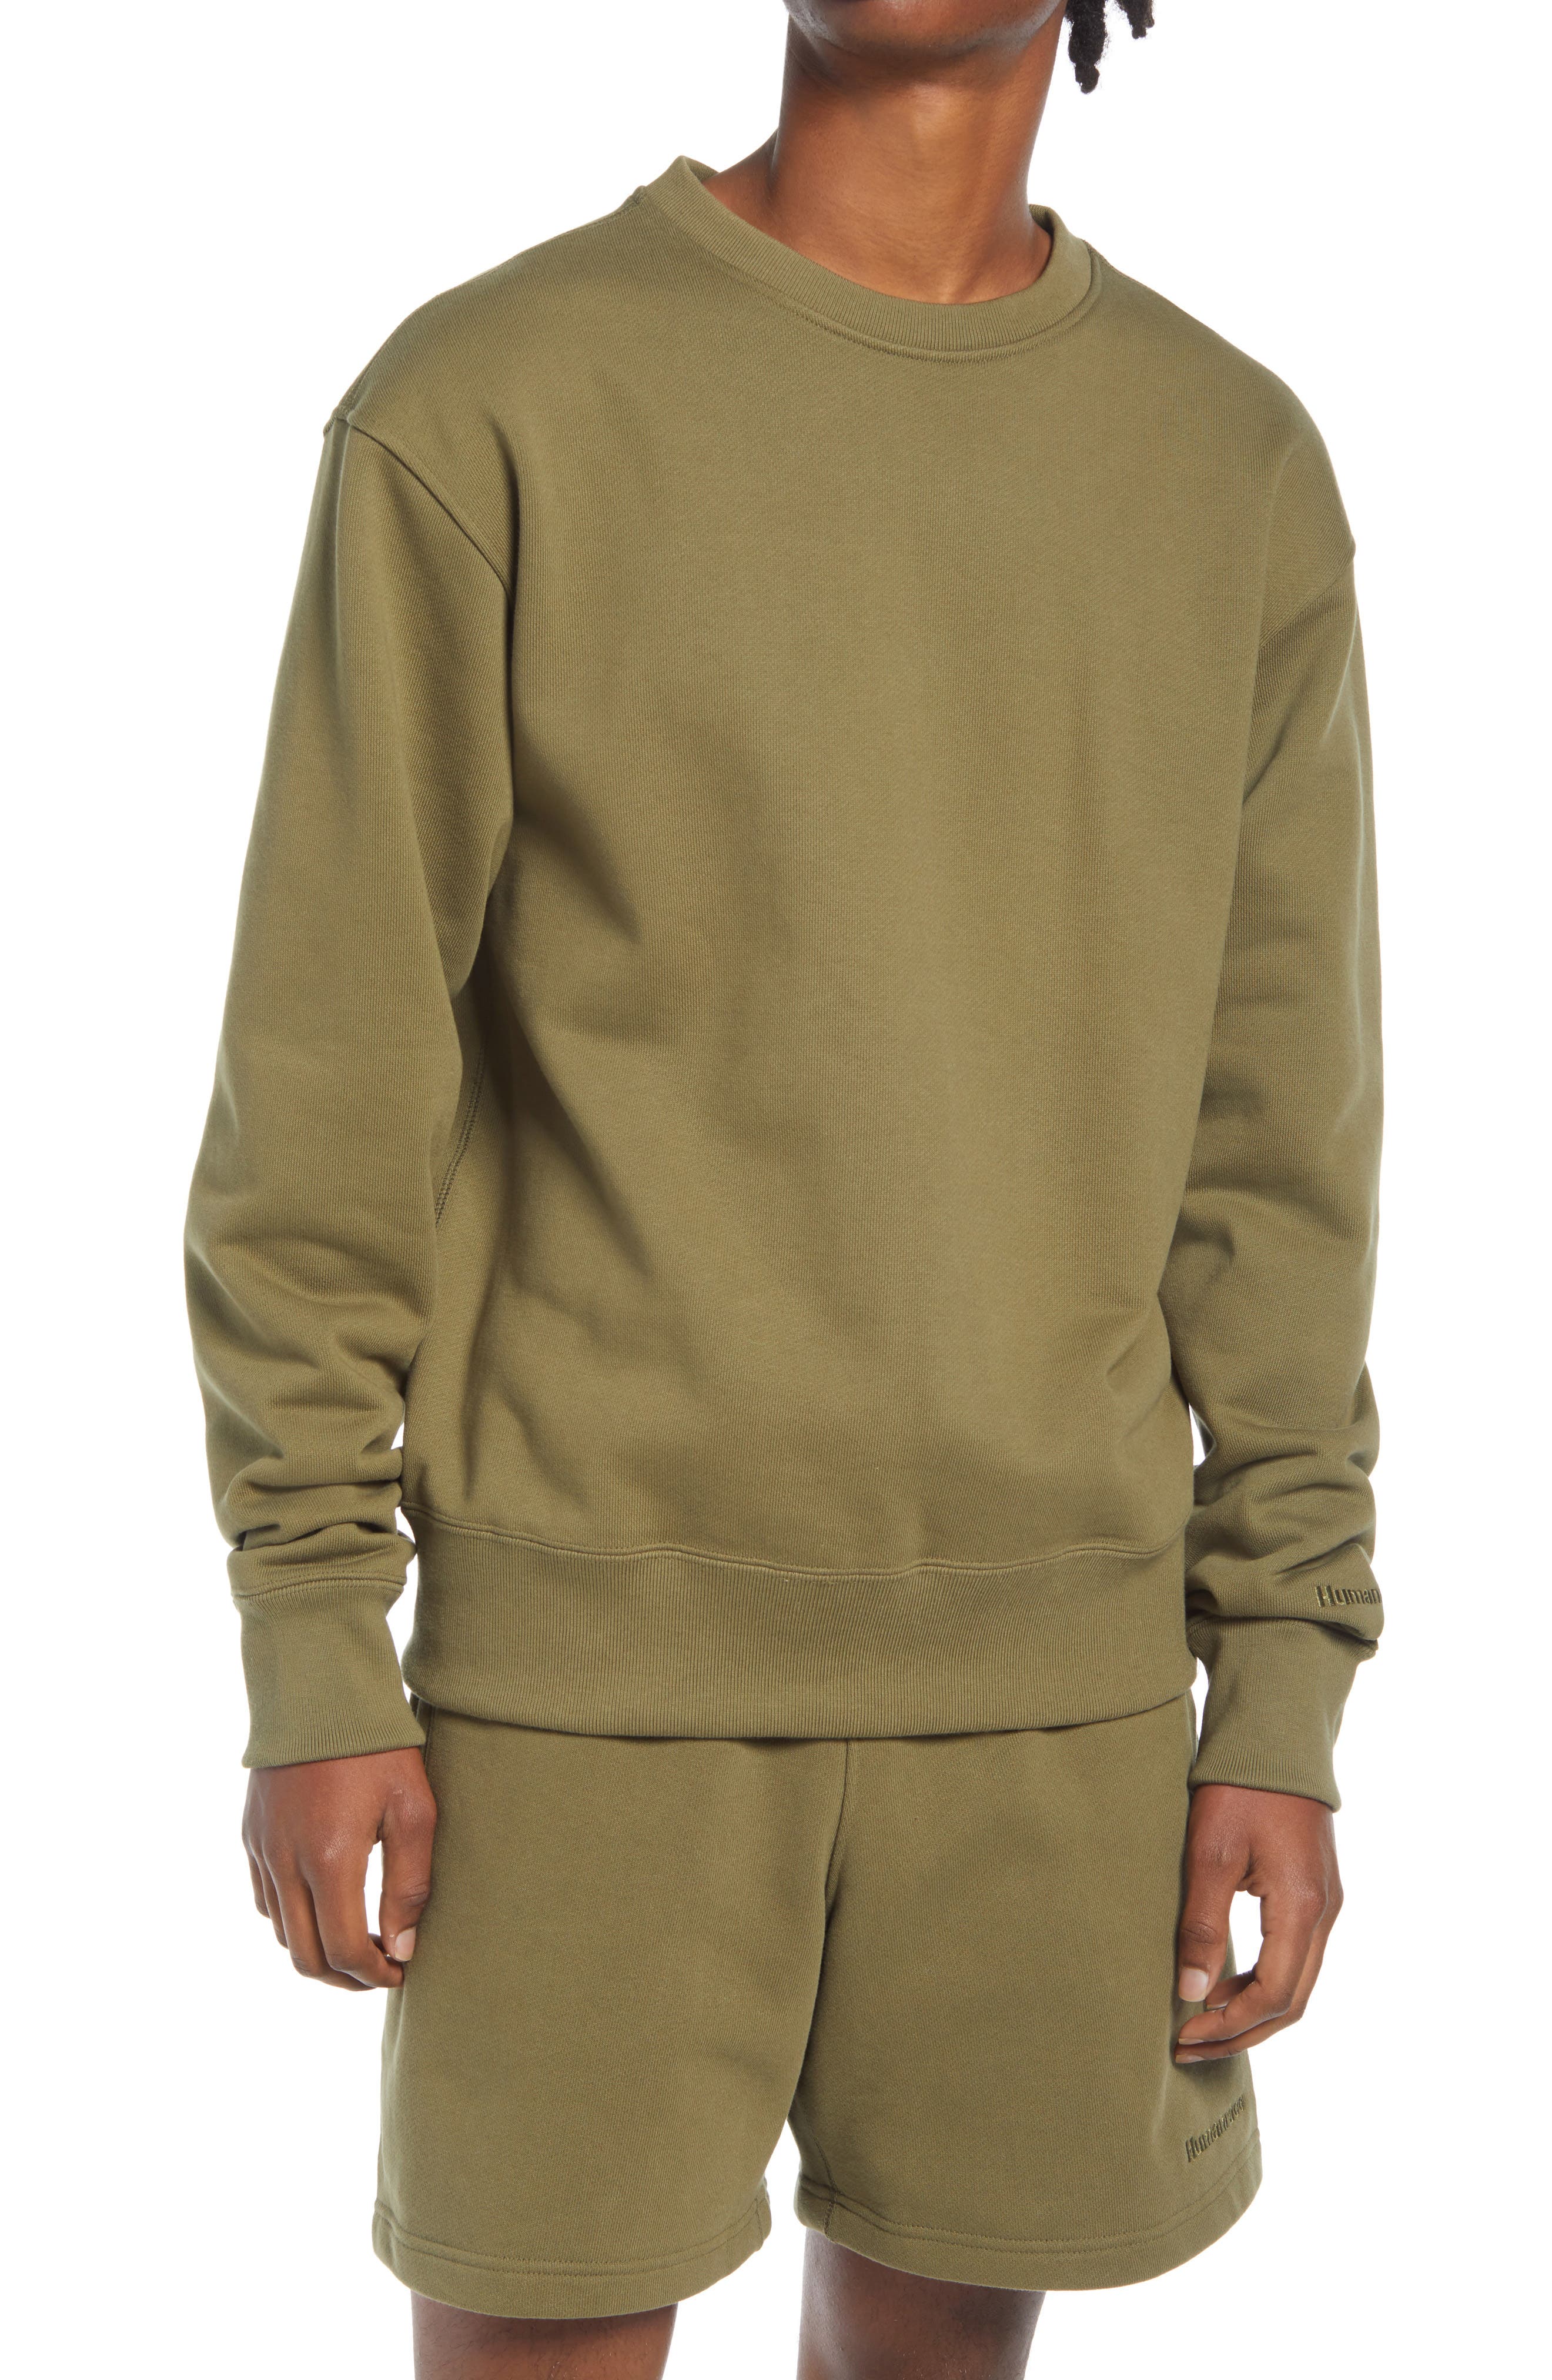 adidas Originals x Pharrell Williams Unisex Crewneck Sweatshirt in Olive Cargo at Nordstrom